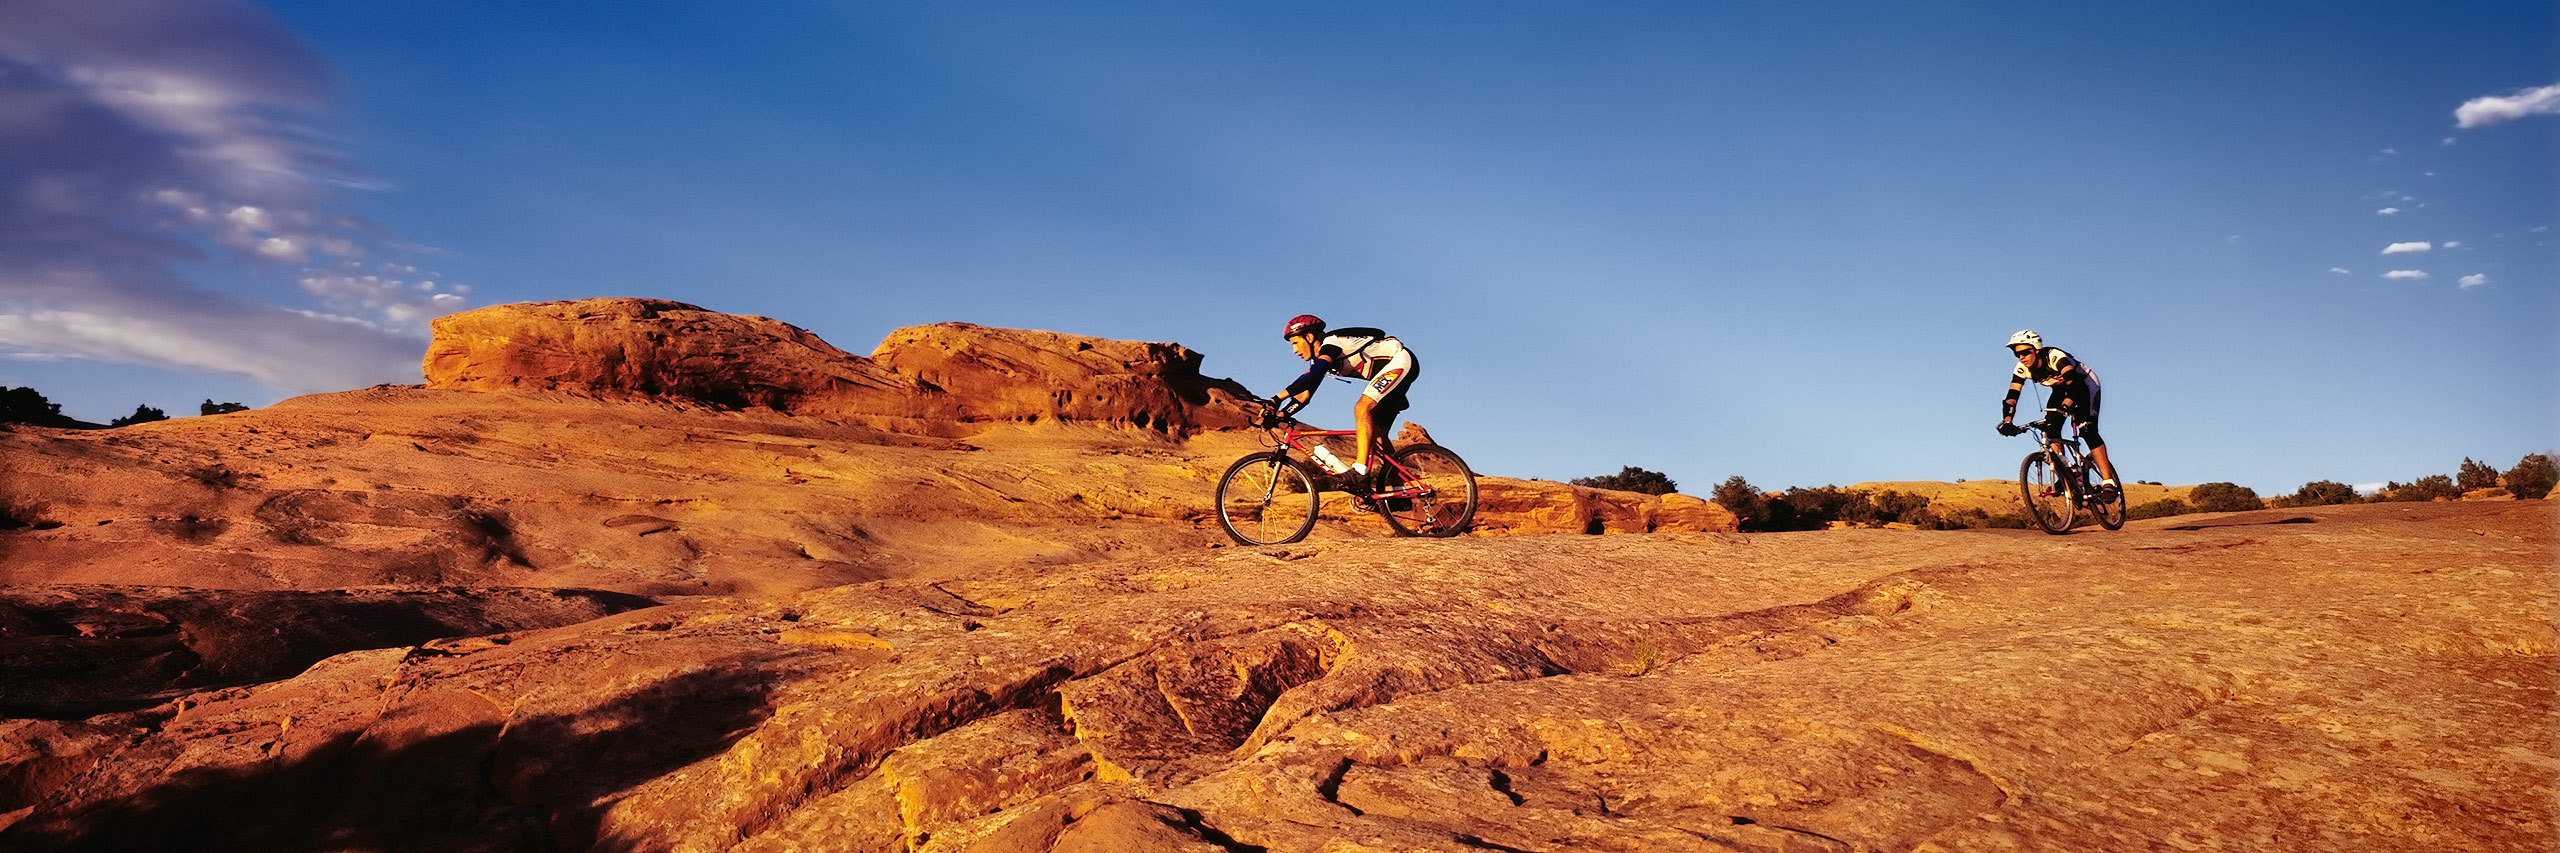 Mountain Bikers, Slickrock Bike Trail, Moab, Utah, USA (23705cc1.jpg)